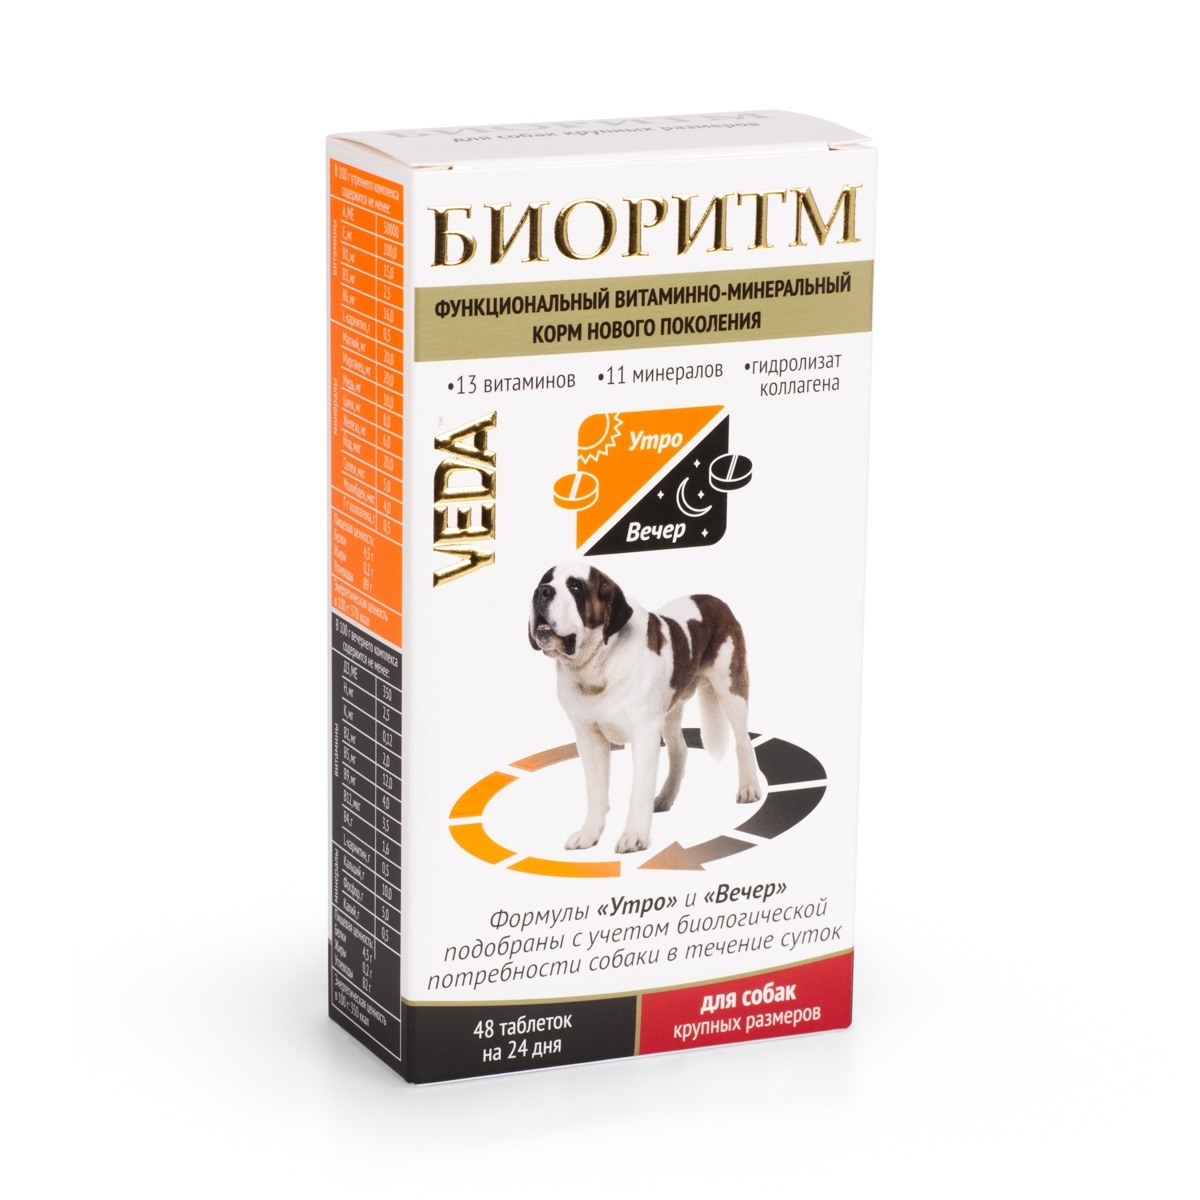 Веда Веда биоритм витамины для собак крупных пород (20 г) веда веда шоколад белый с морковью для собак 15 г